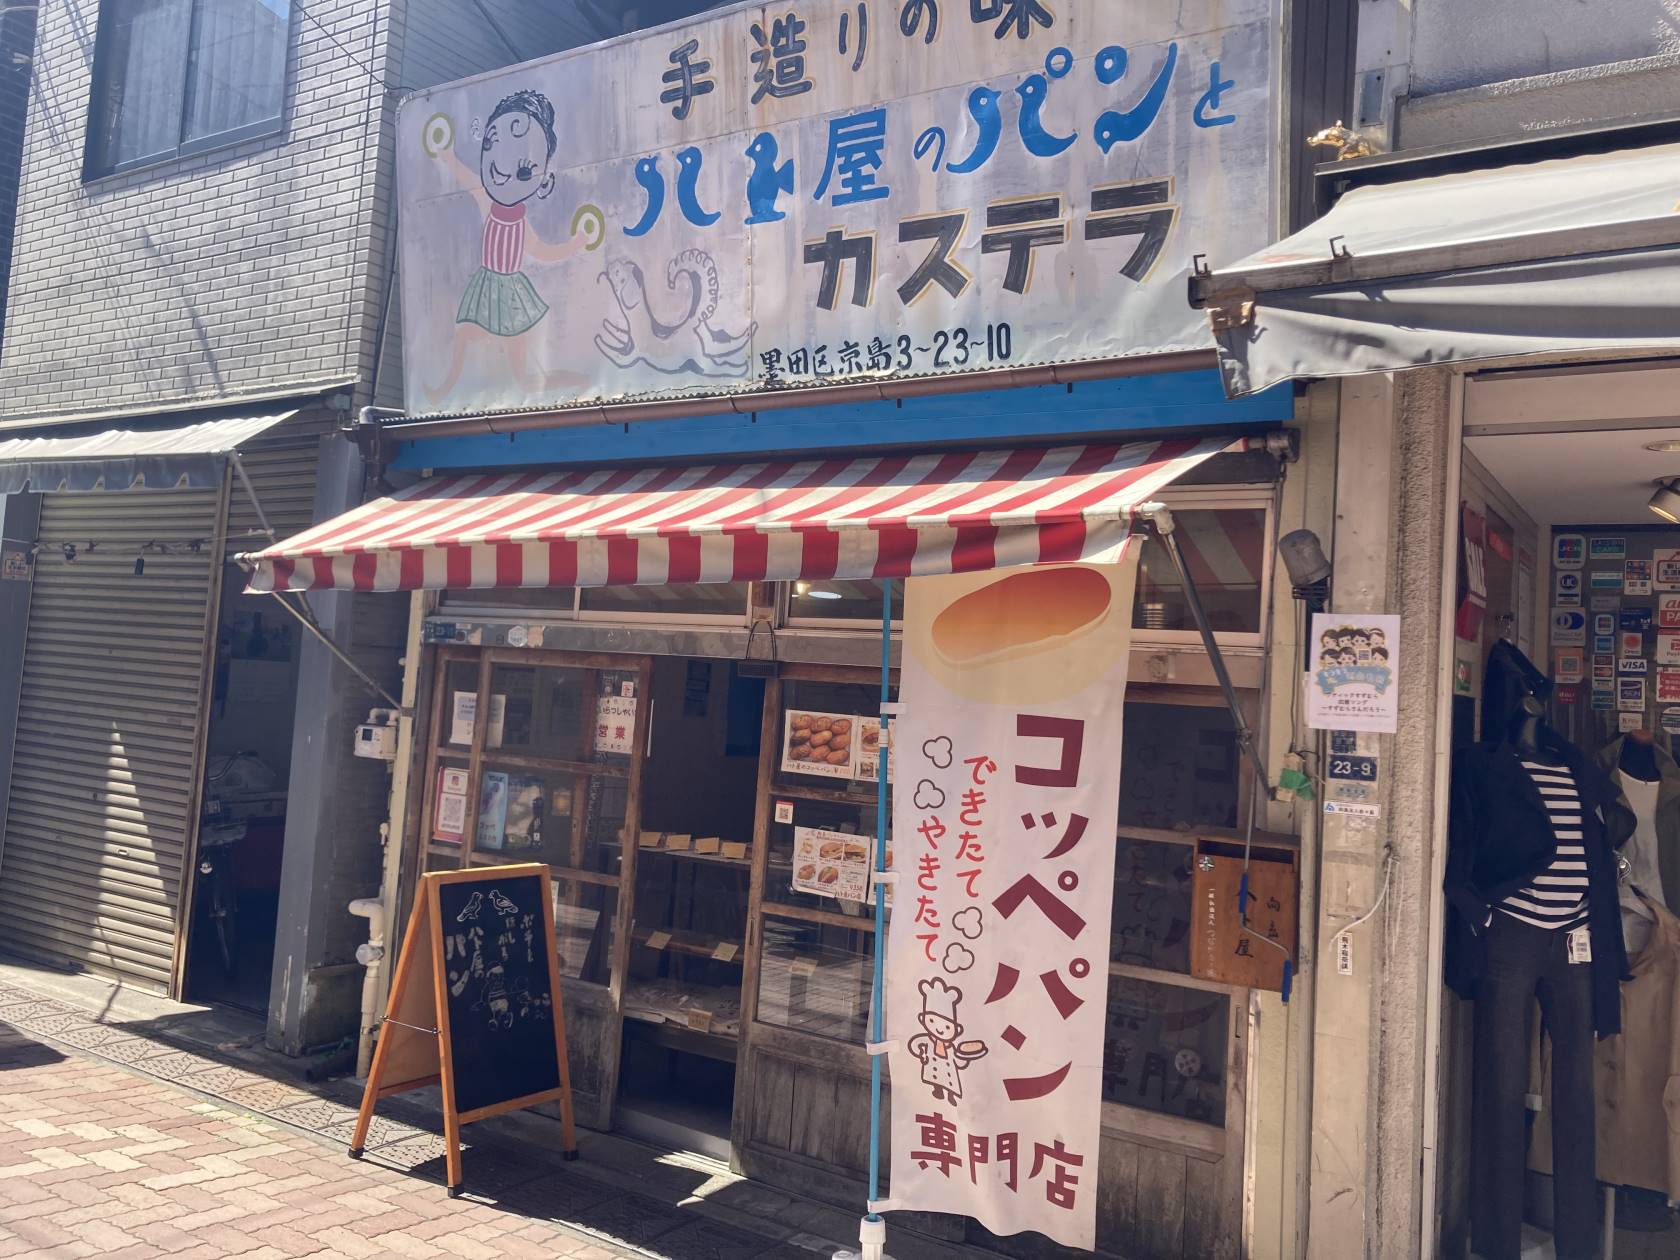 墨田区のパン屋『ハト屋のパン』に「こっぺぱん」を買いに行ってみた。